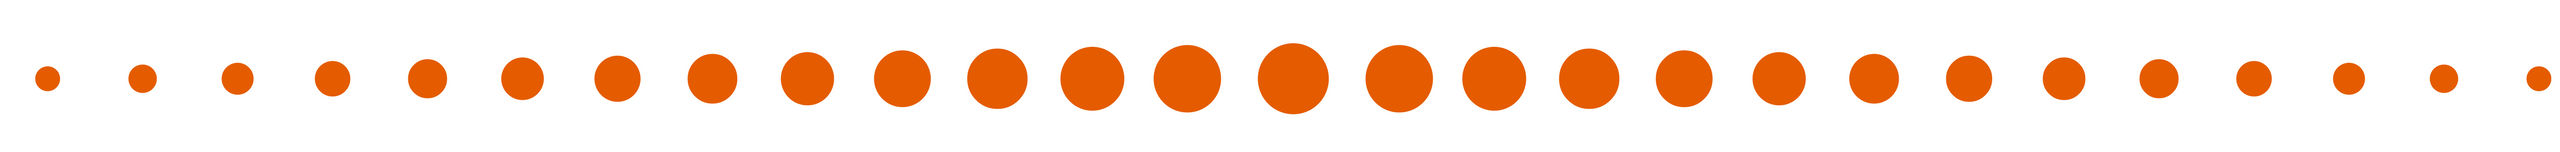 linea-la-naranja-completa.png